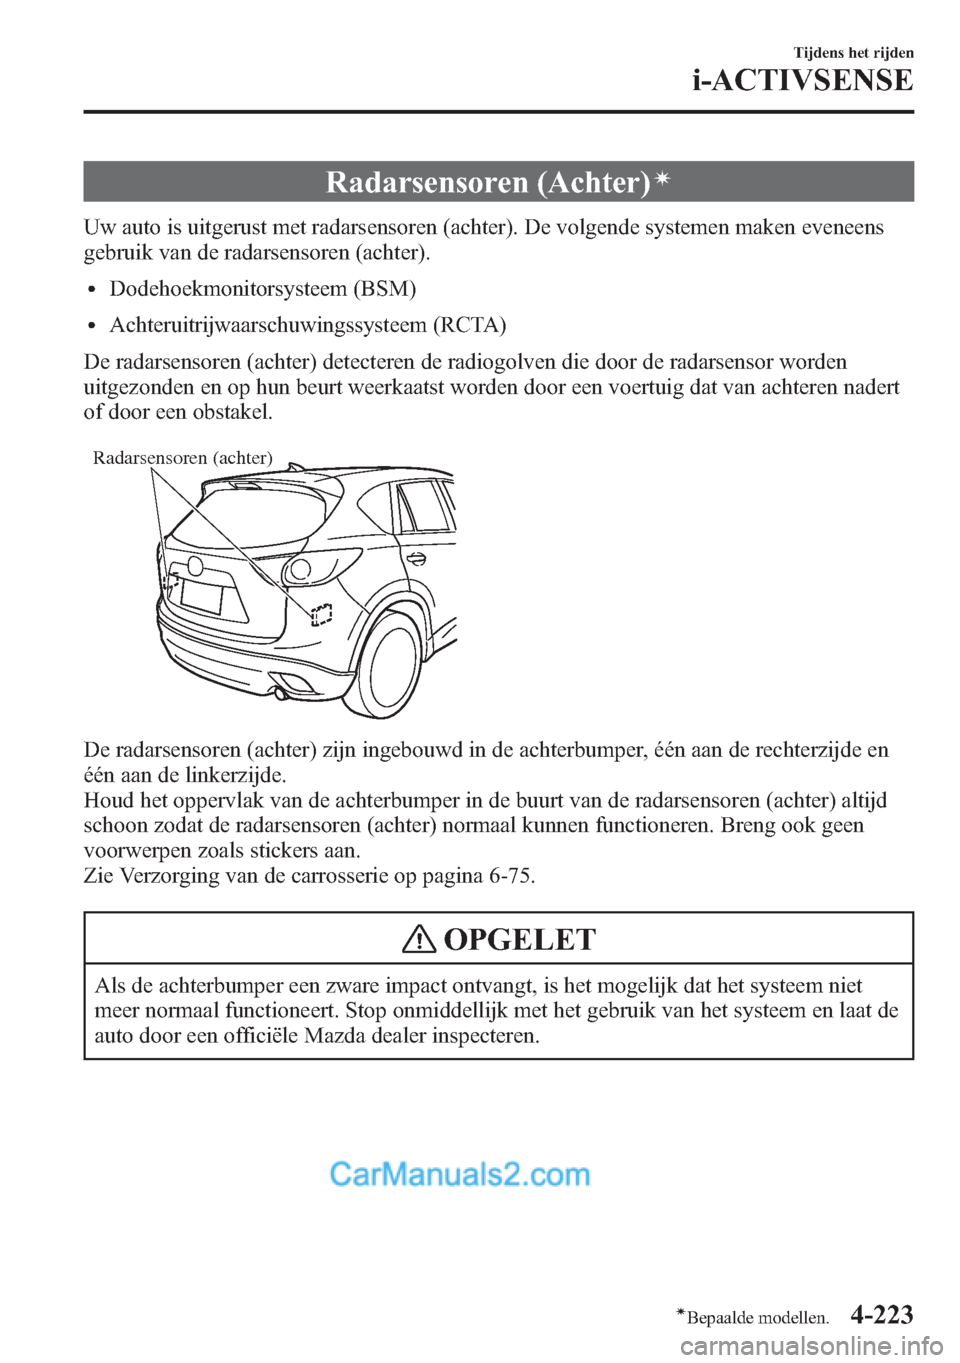 MAZDA MODEL CX-5 2015  Handleiding (in Dutch) Radarsensoren (Achter)í
Uw auto is uitgerust met radarsensoren (achter). De volgende systemen maken eveneens
gebruik van de radarsensoren (achter).
lDodehoekmonitorsysteem (BSM)
lAchteruitrijwaarschu